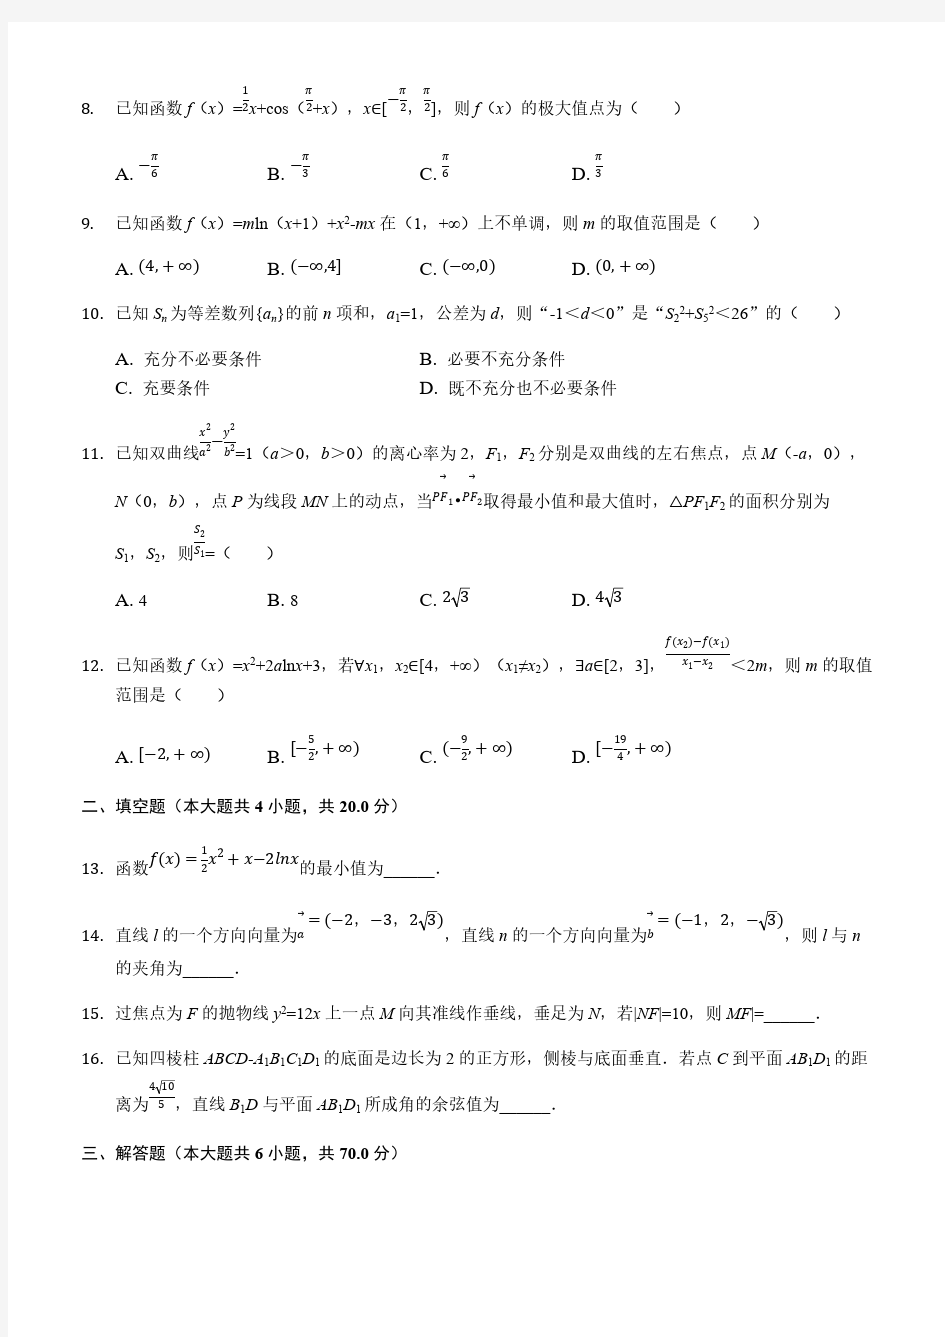  2019年山东省高考数学模拟试卷